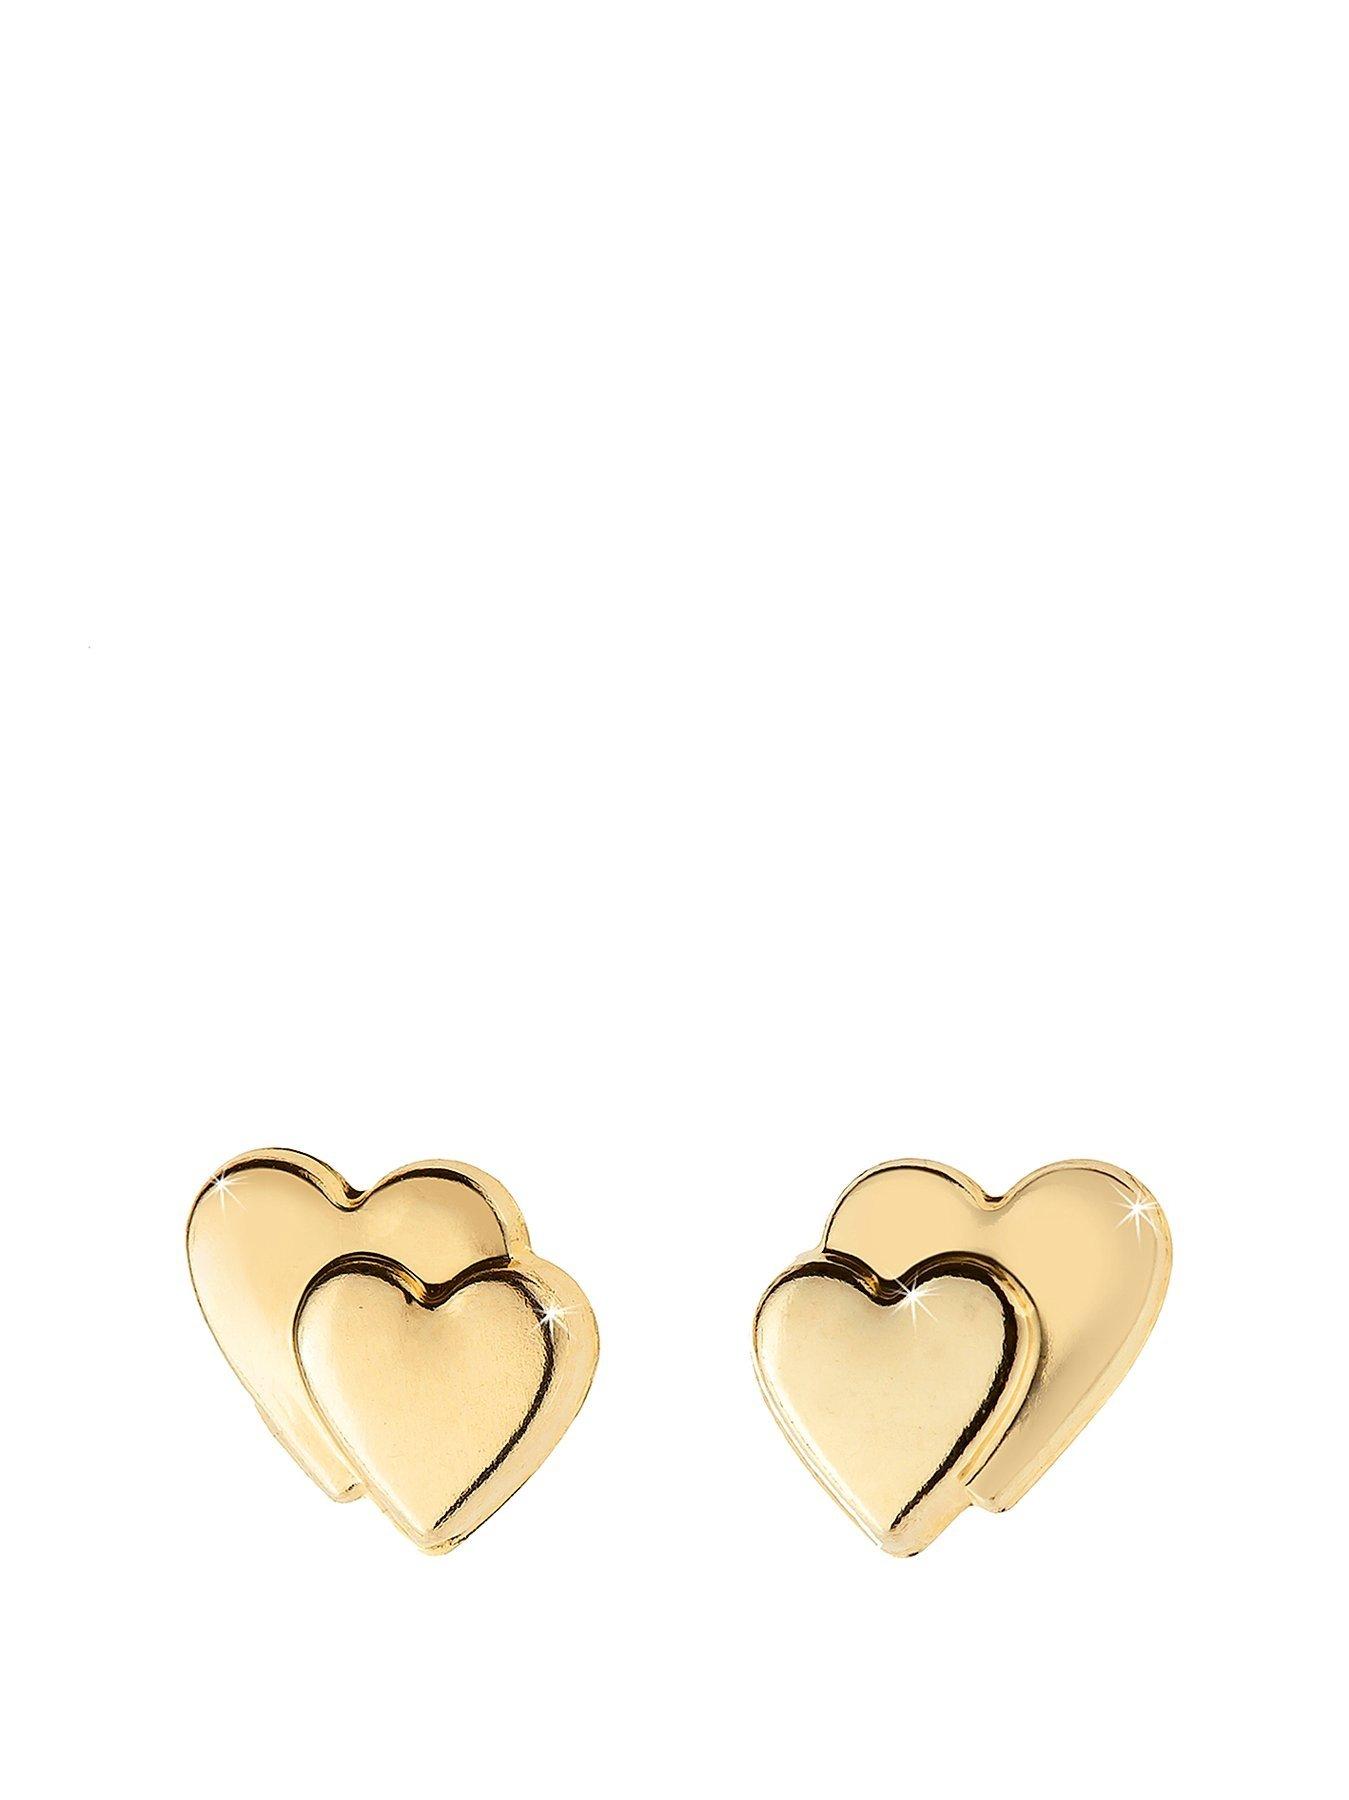 Women 9 Carat Gold Heart on Heart Earrings in Red Heart Box